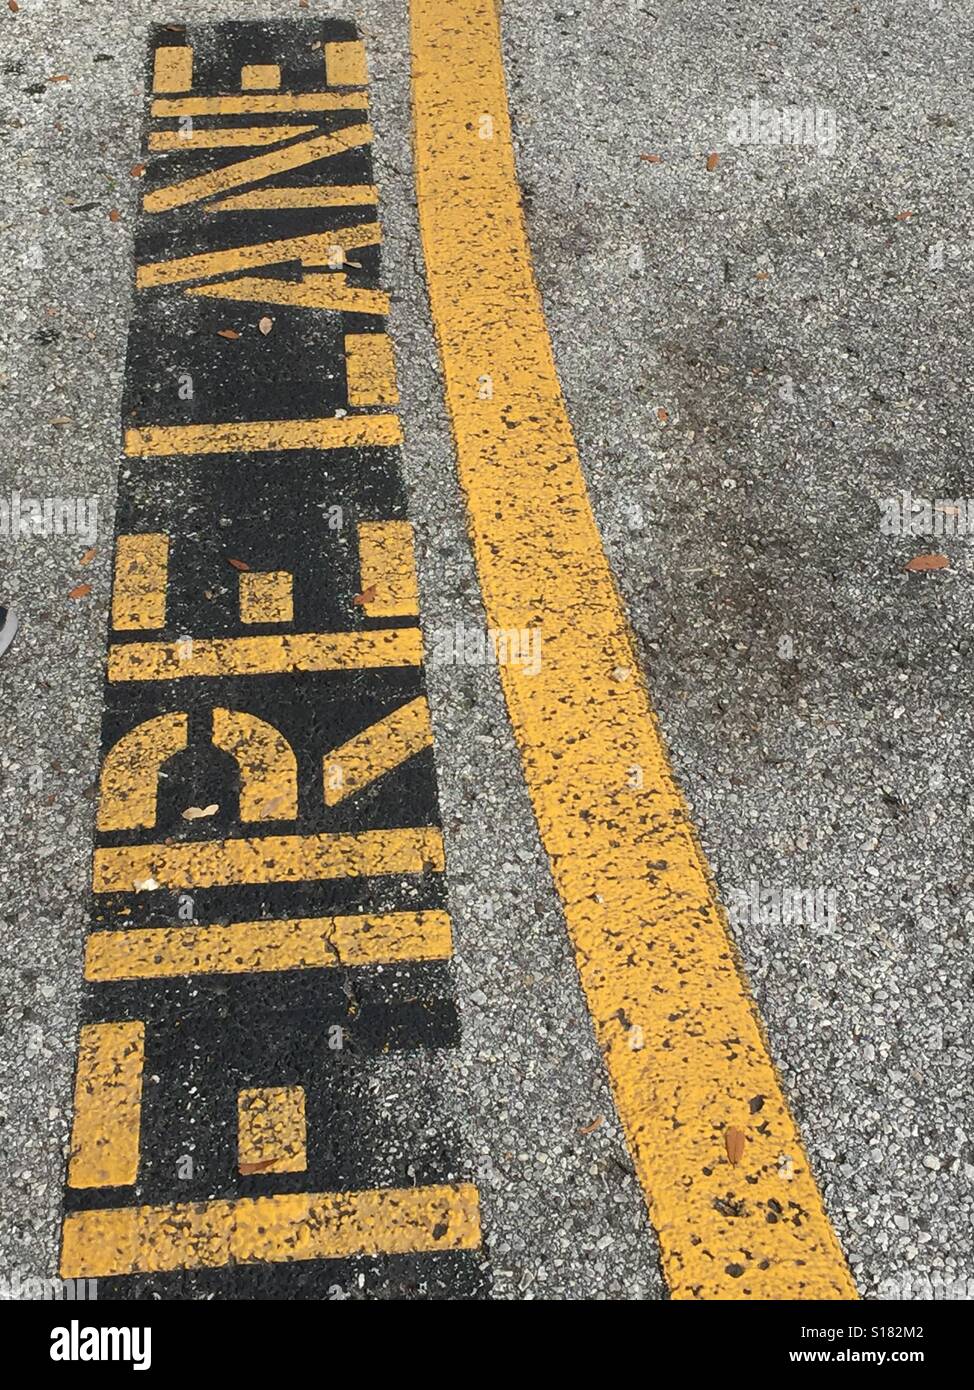 Fire lane peint en lettres jaunes sur la route Banque D'Images